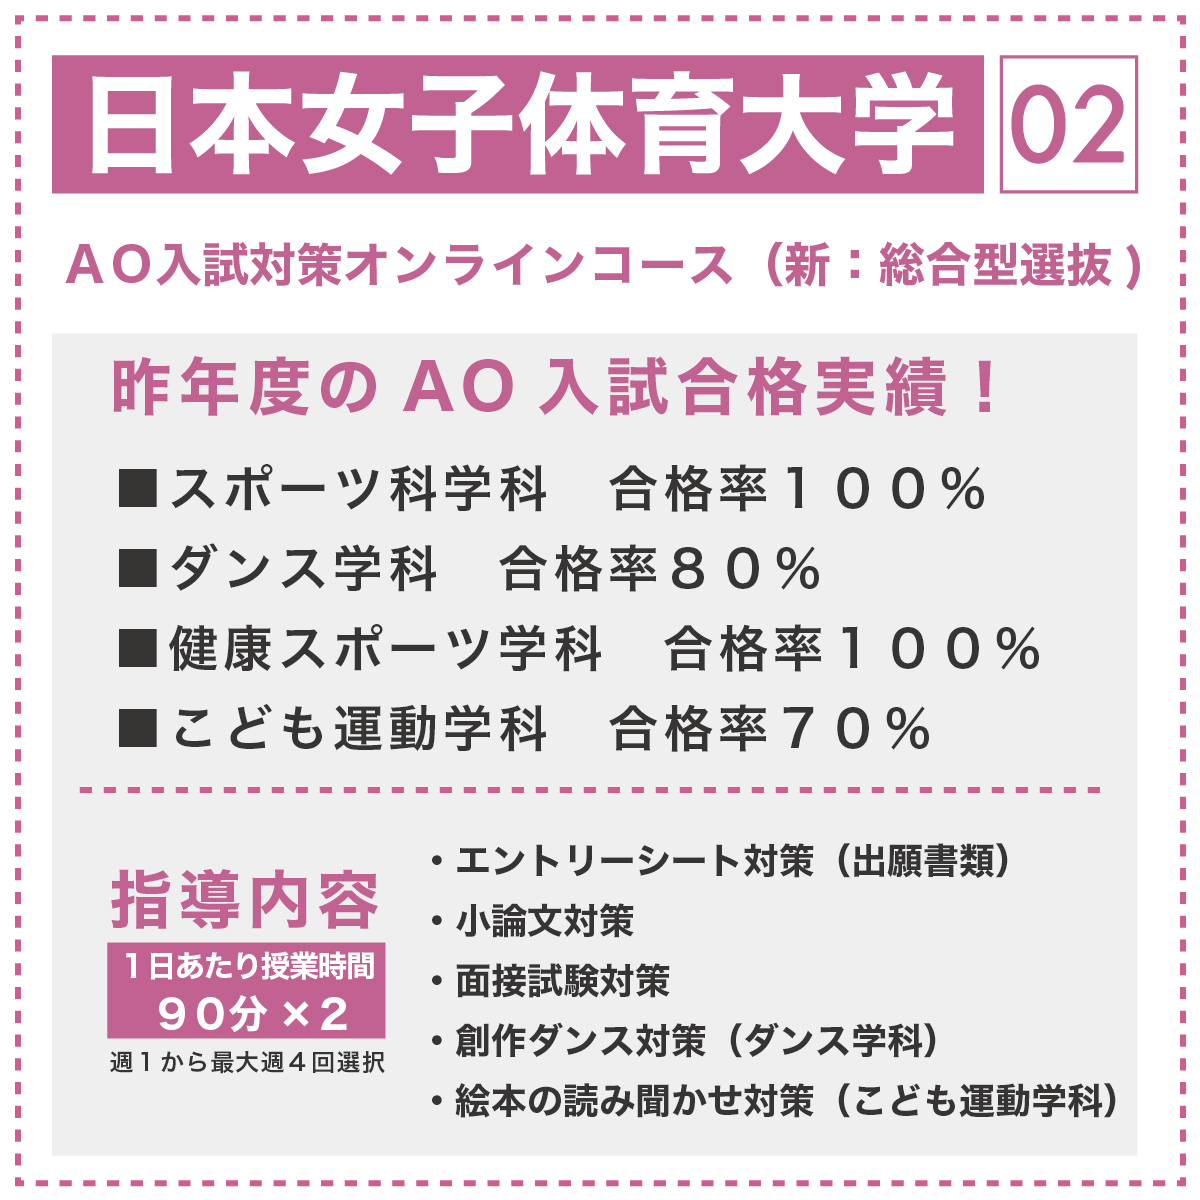 日本女子体育大学 AO入試対策オンラインコース(新:総合型選抜)